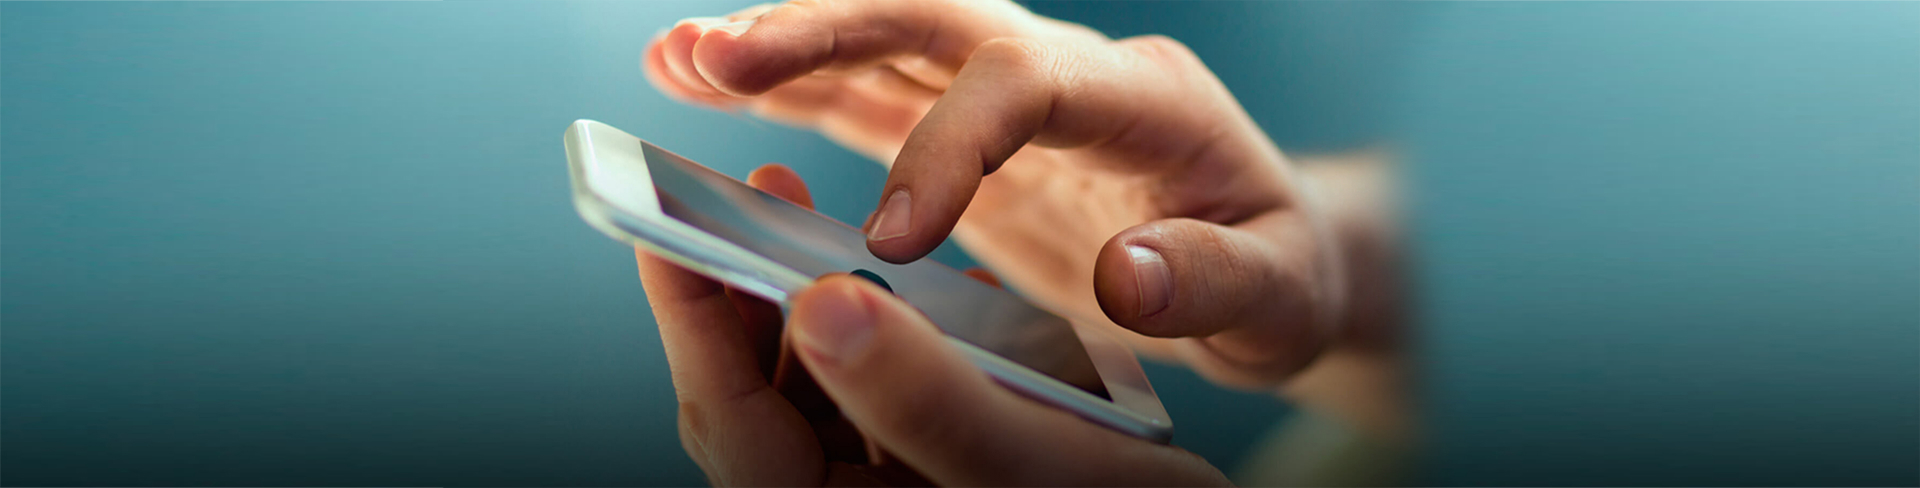 Imagem de uma mão segurando um smartfone e com a outra mão tocando na tela